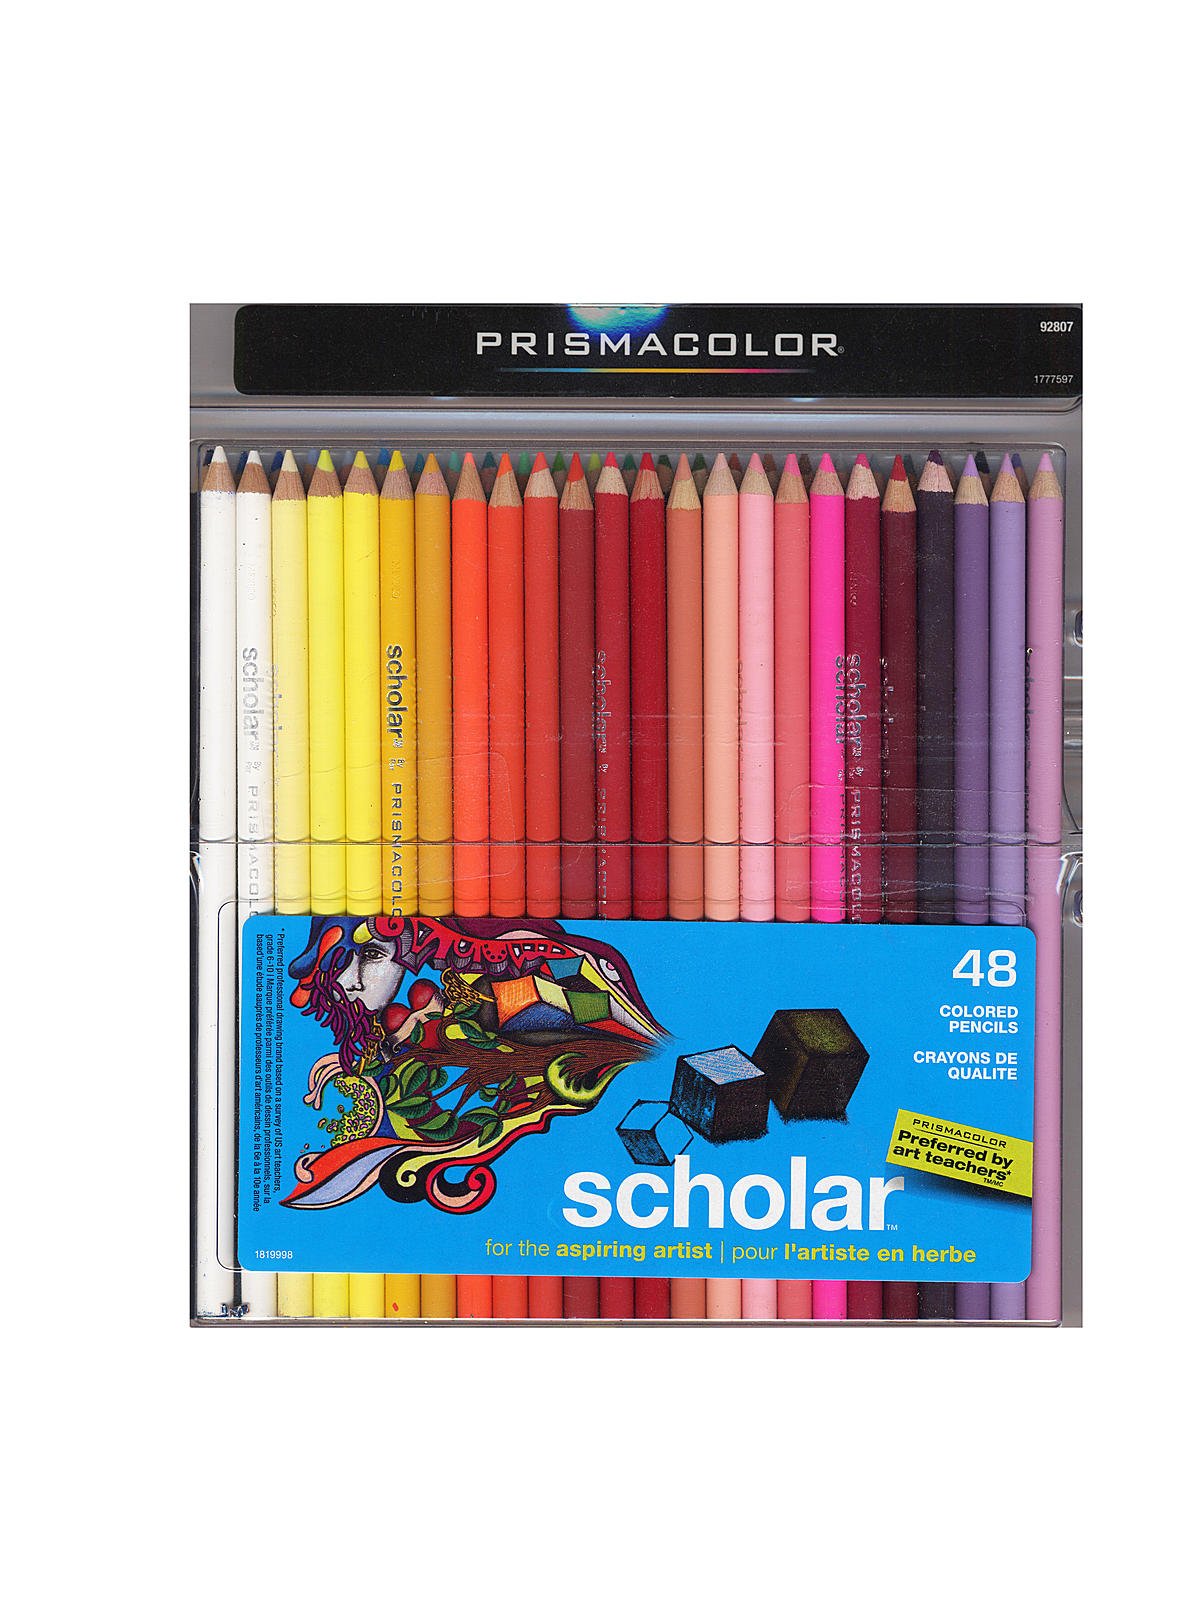 Prismacolor Scholar Art Pencil Set of 60